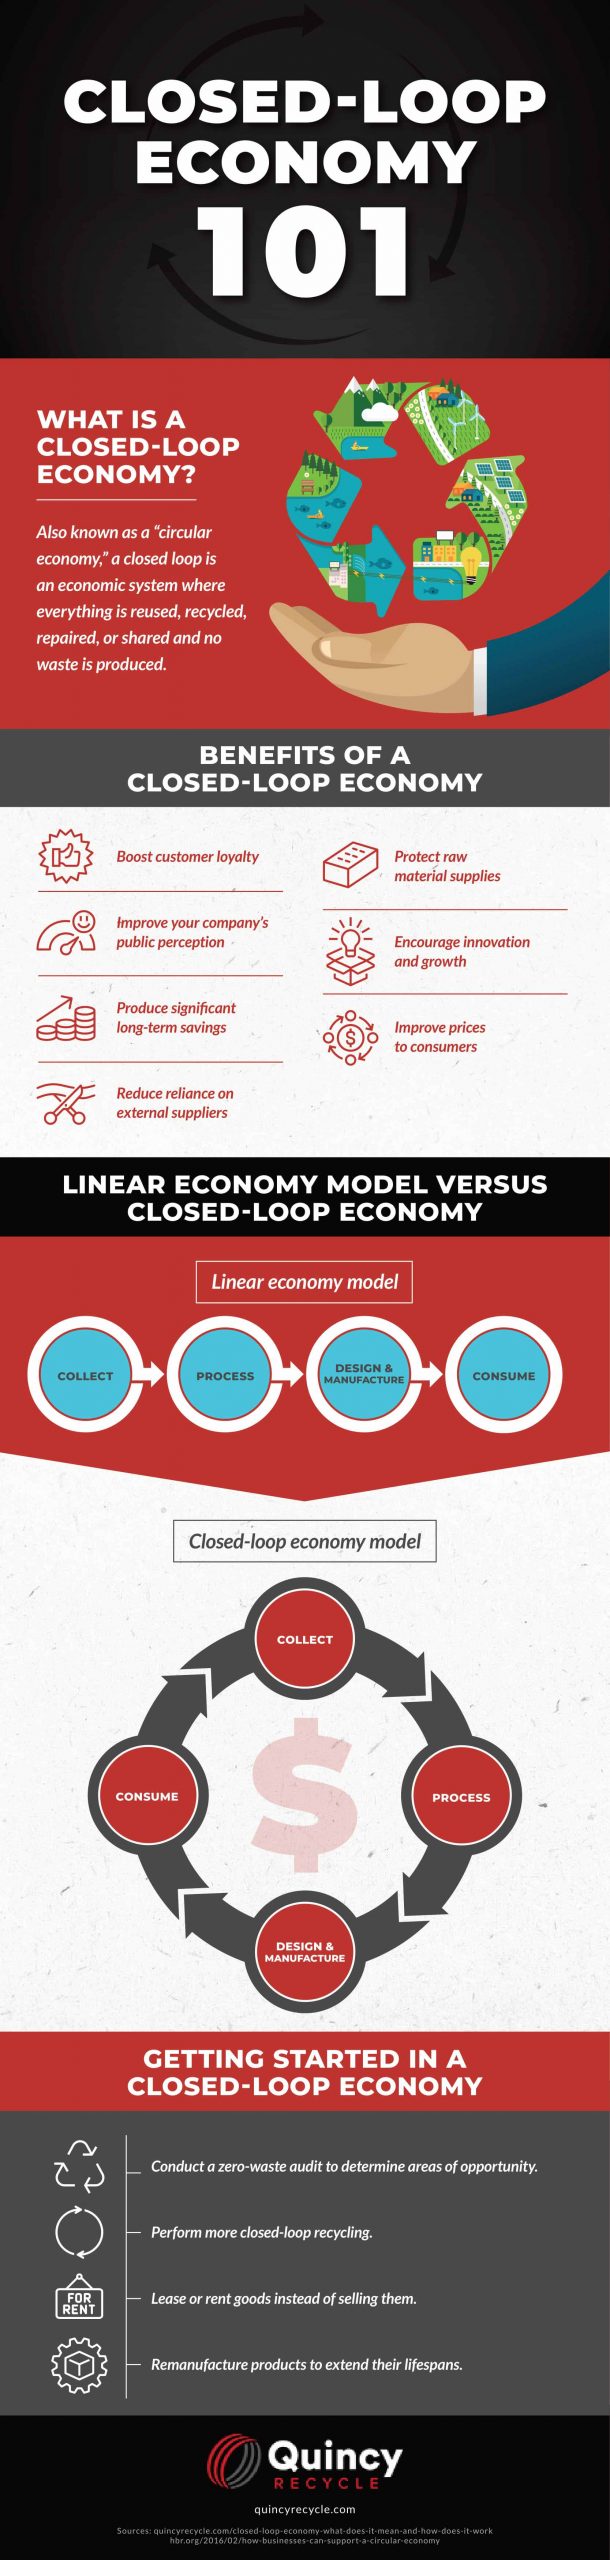 closed loop economy 101 infographic